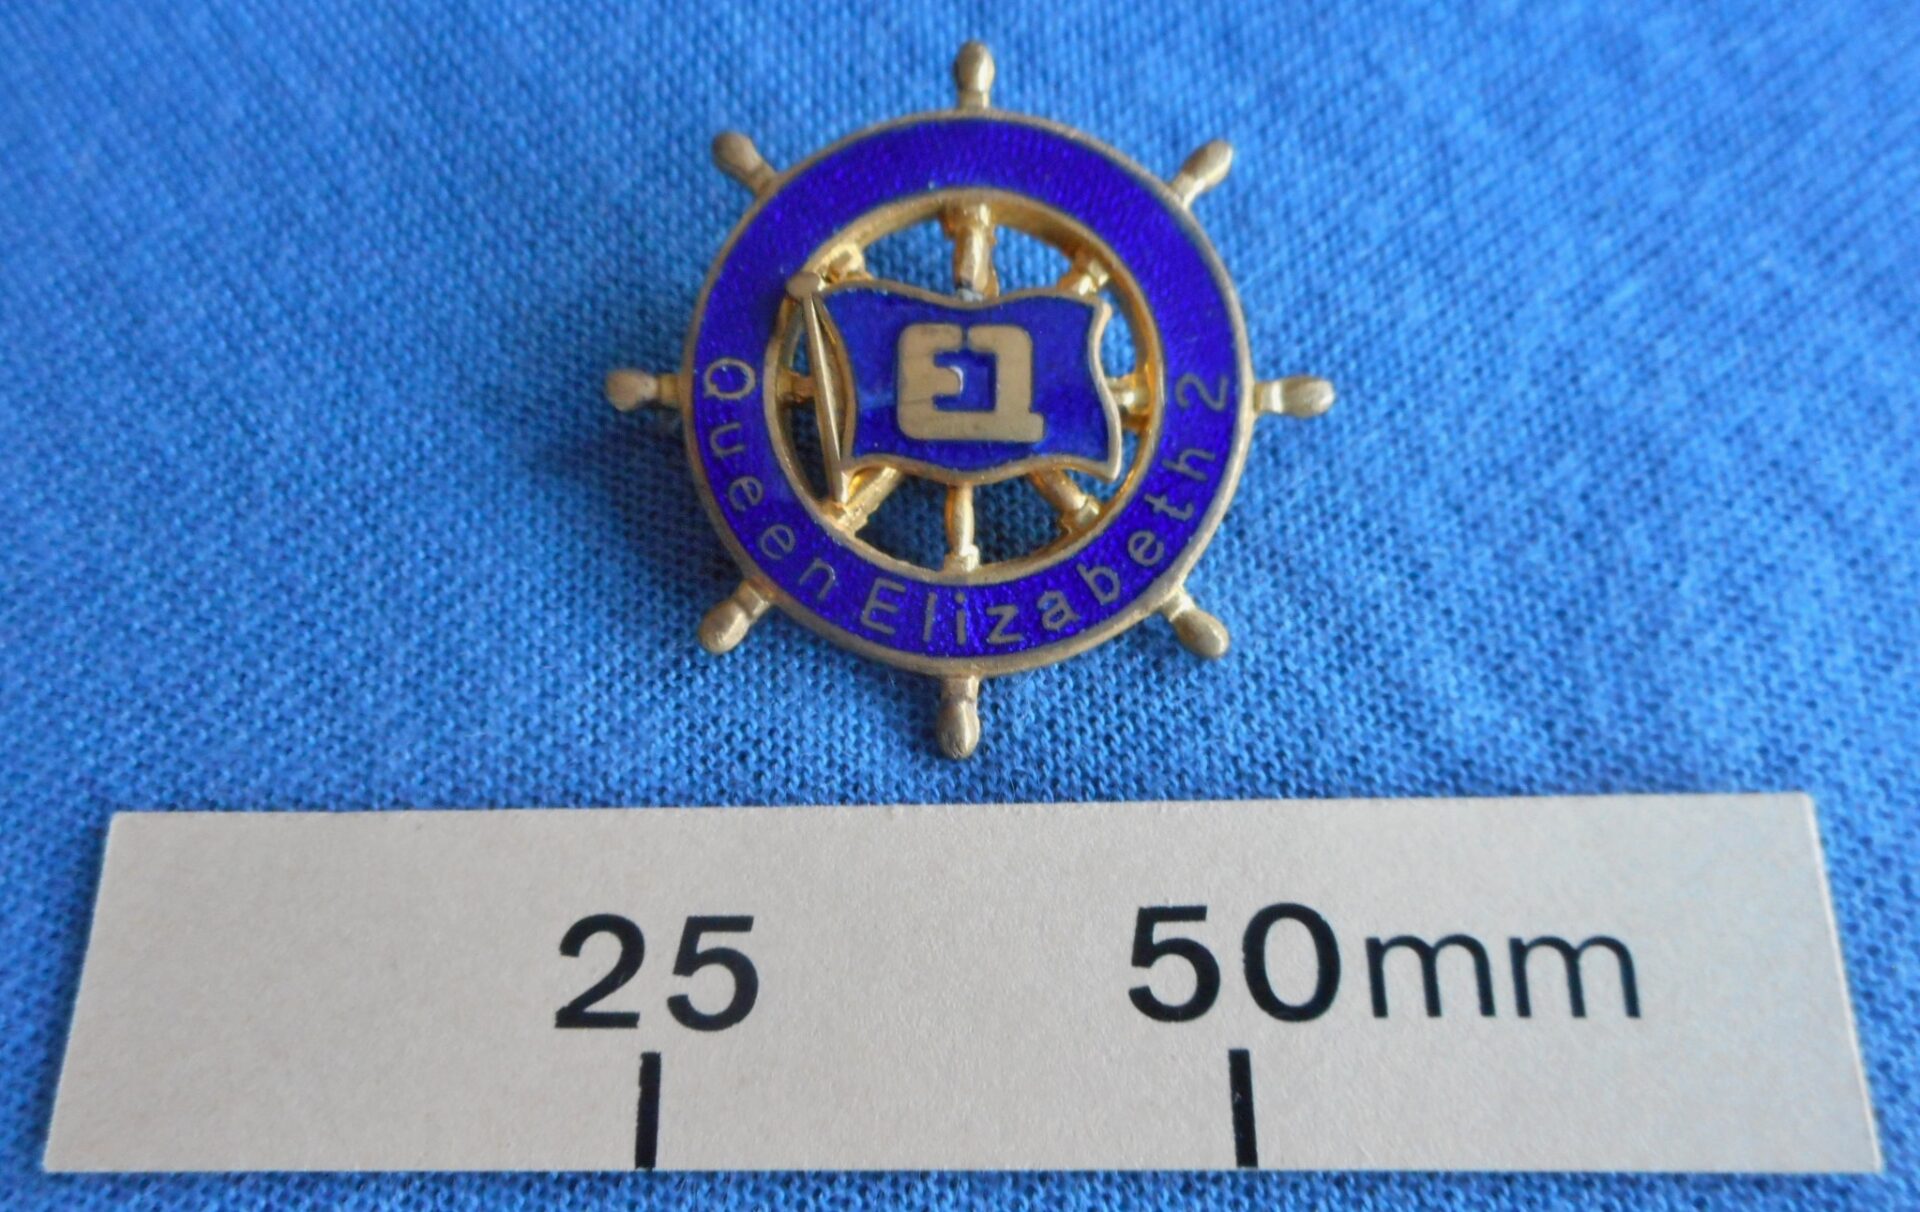 Queen Elizabeth 2 badge